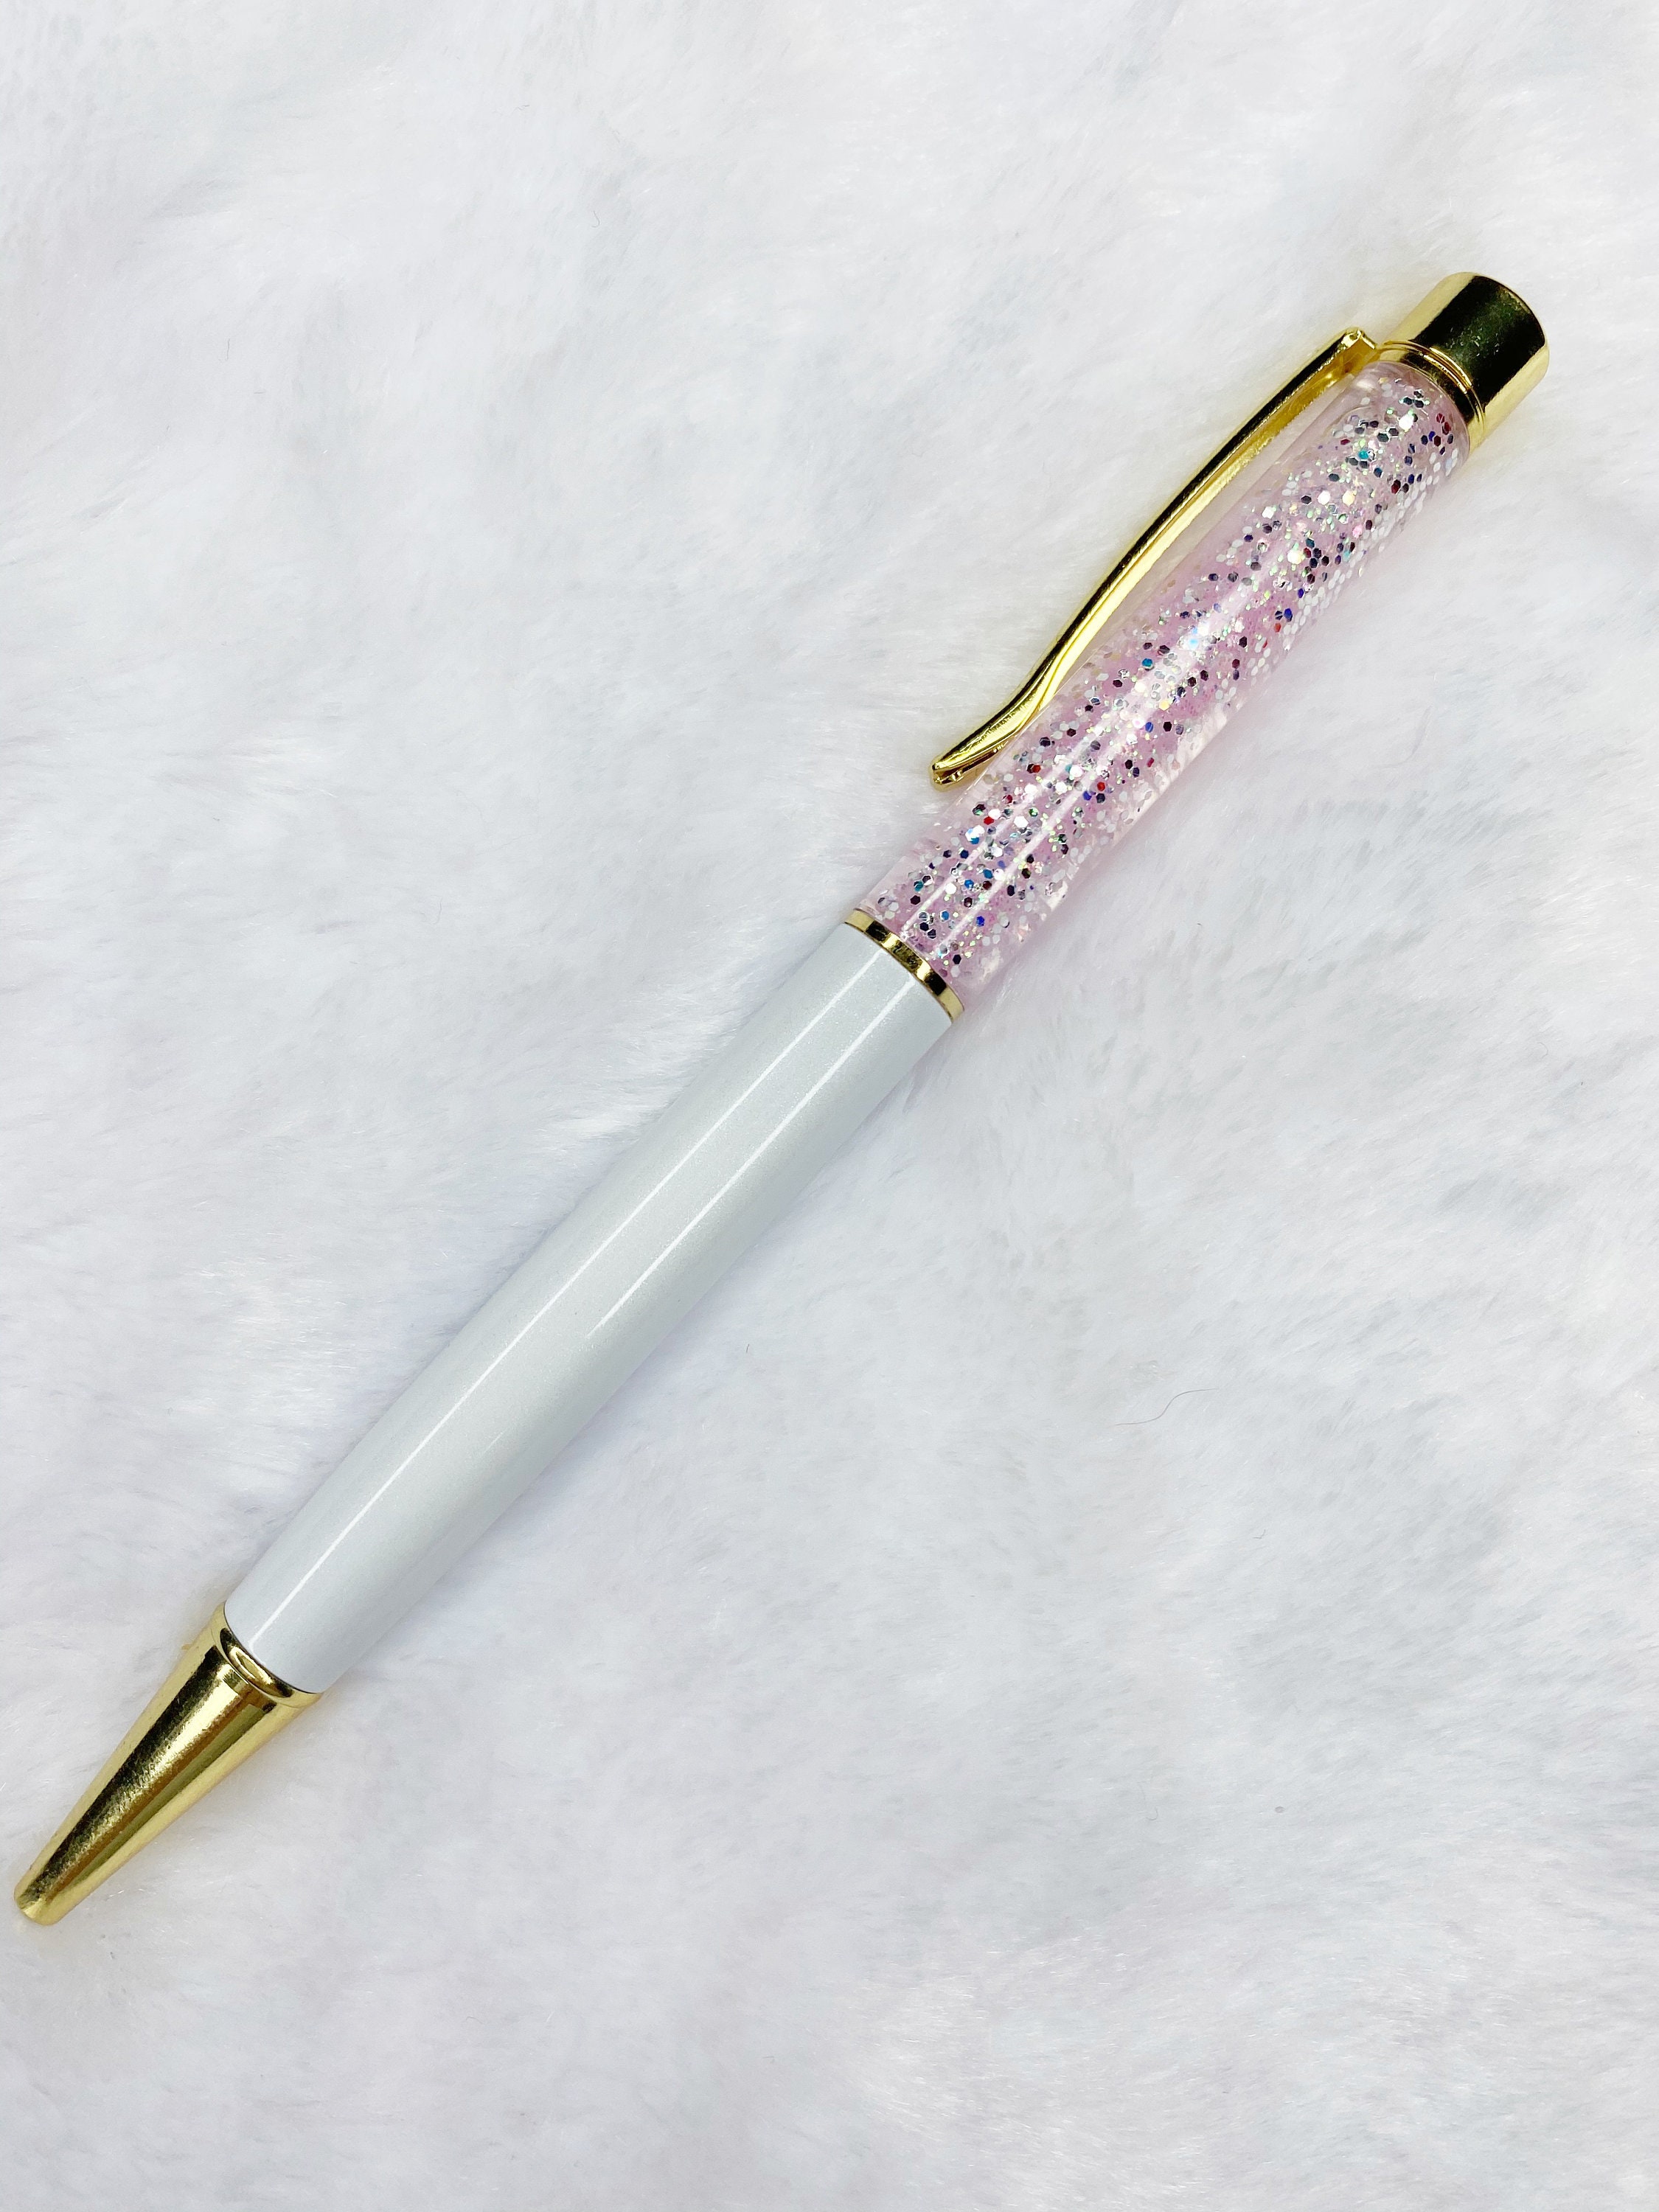 Floating Glitter Pens, Girls Best Friend, Glitter Pens, Gifts for Women,  Planner Pen, Journal Pen, Ballpoint Pen, Refillable Pen 